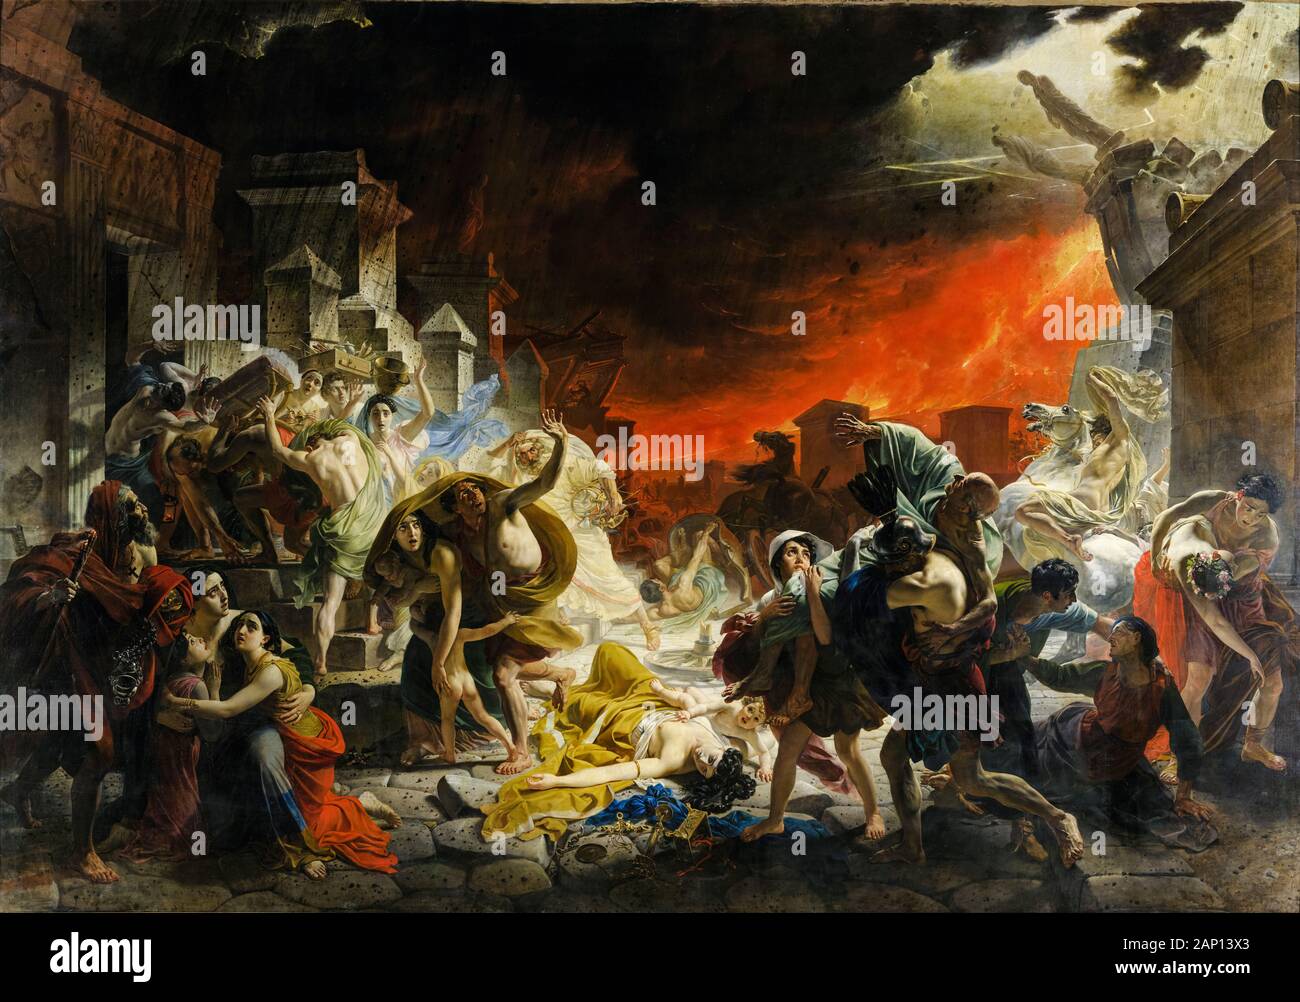 Karl Pavlovich Bryullov, painting, The Last Day of Pompeii, 1830-1833 Stock Photo